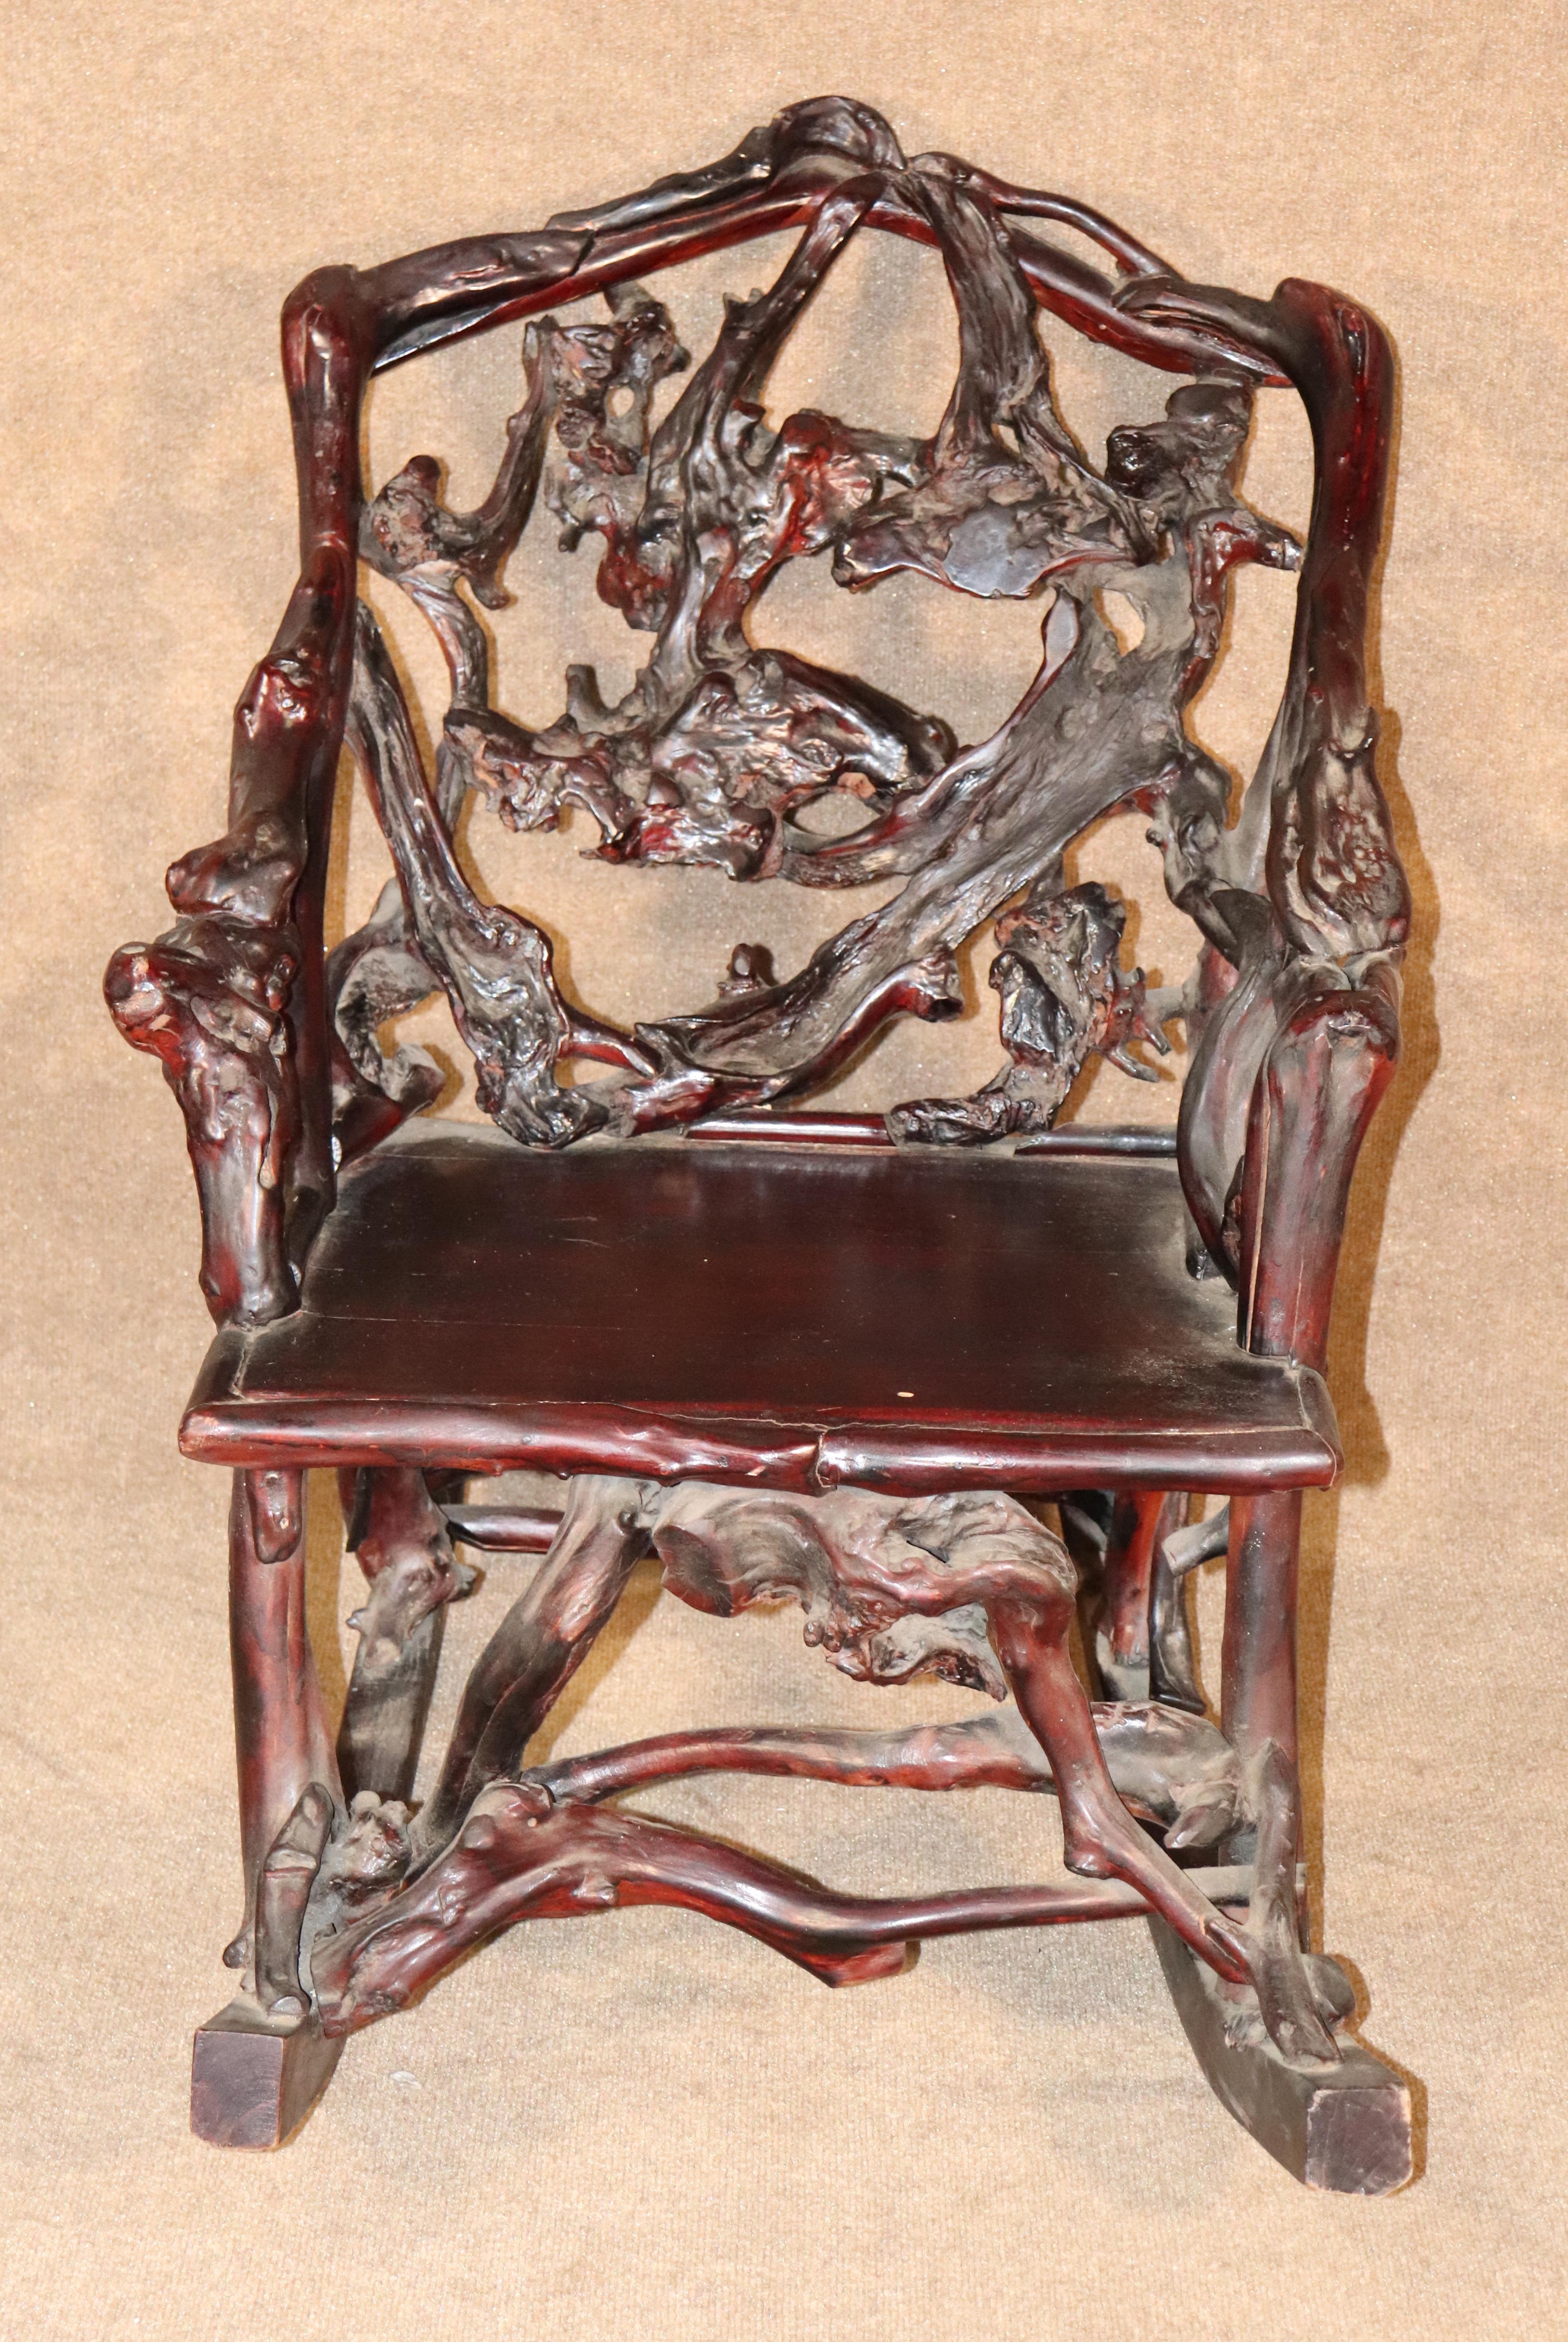 Chaise à bascule de style japonais en bois fruitier sculpté. Chaise artistique pour la maison ou le bureau.
Veuillez confirmer l'emplacement.